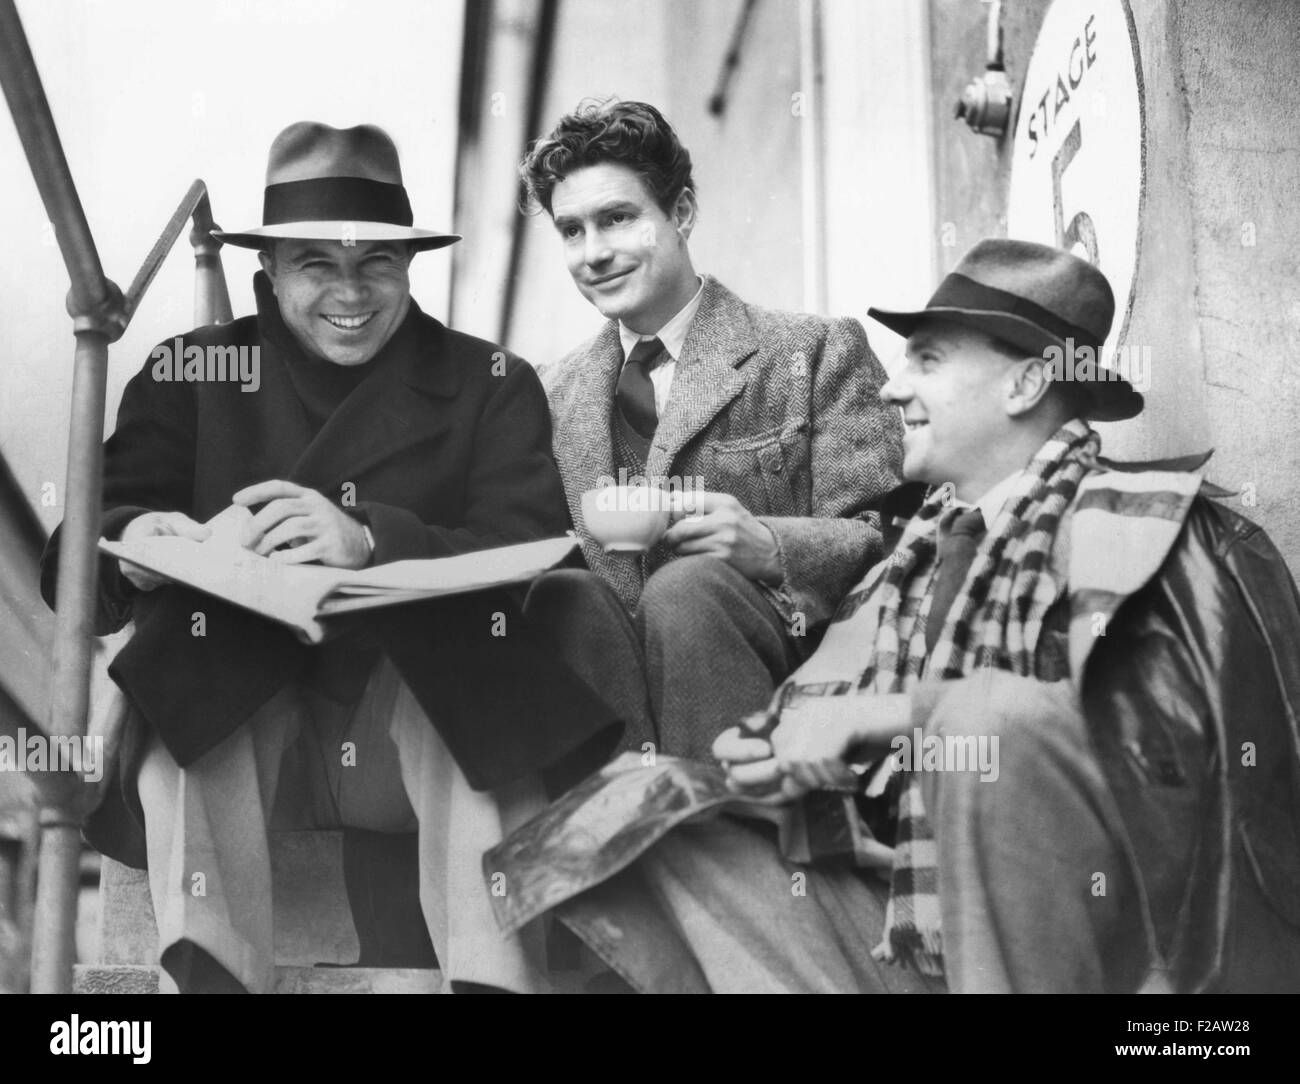 King Vidor, Robert Donat, and Ralph Richardson, during the filming of THE CITADEL, 1938. (CSU 2015 11 1479) Stock Photo